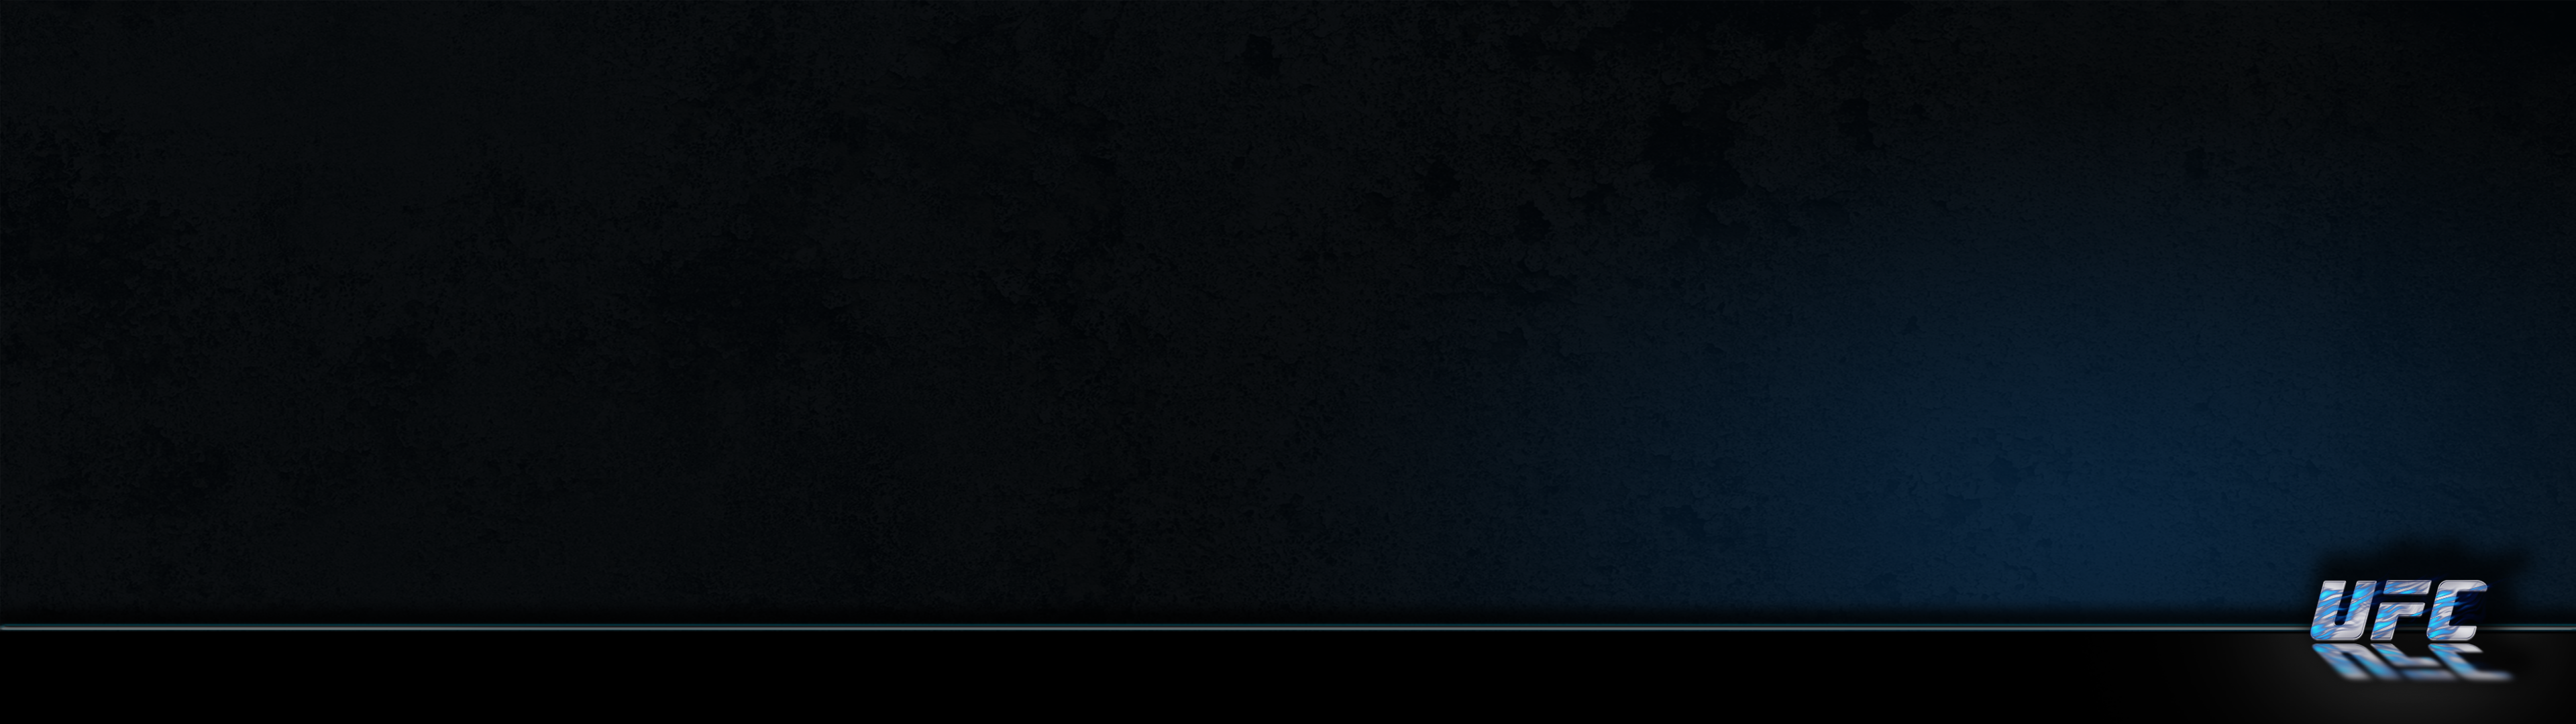 Ufc Flames Grunge Dark Blue Background 1080×3840